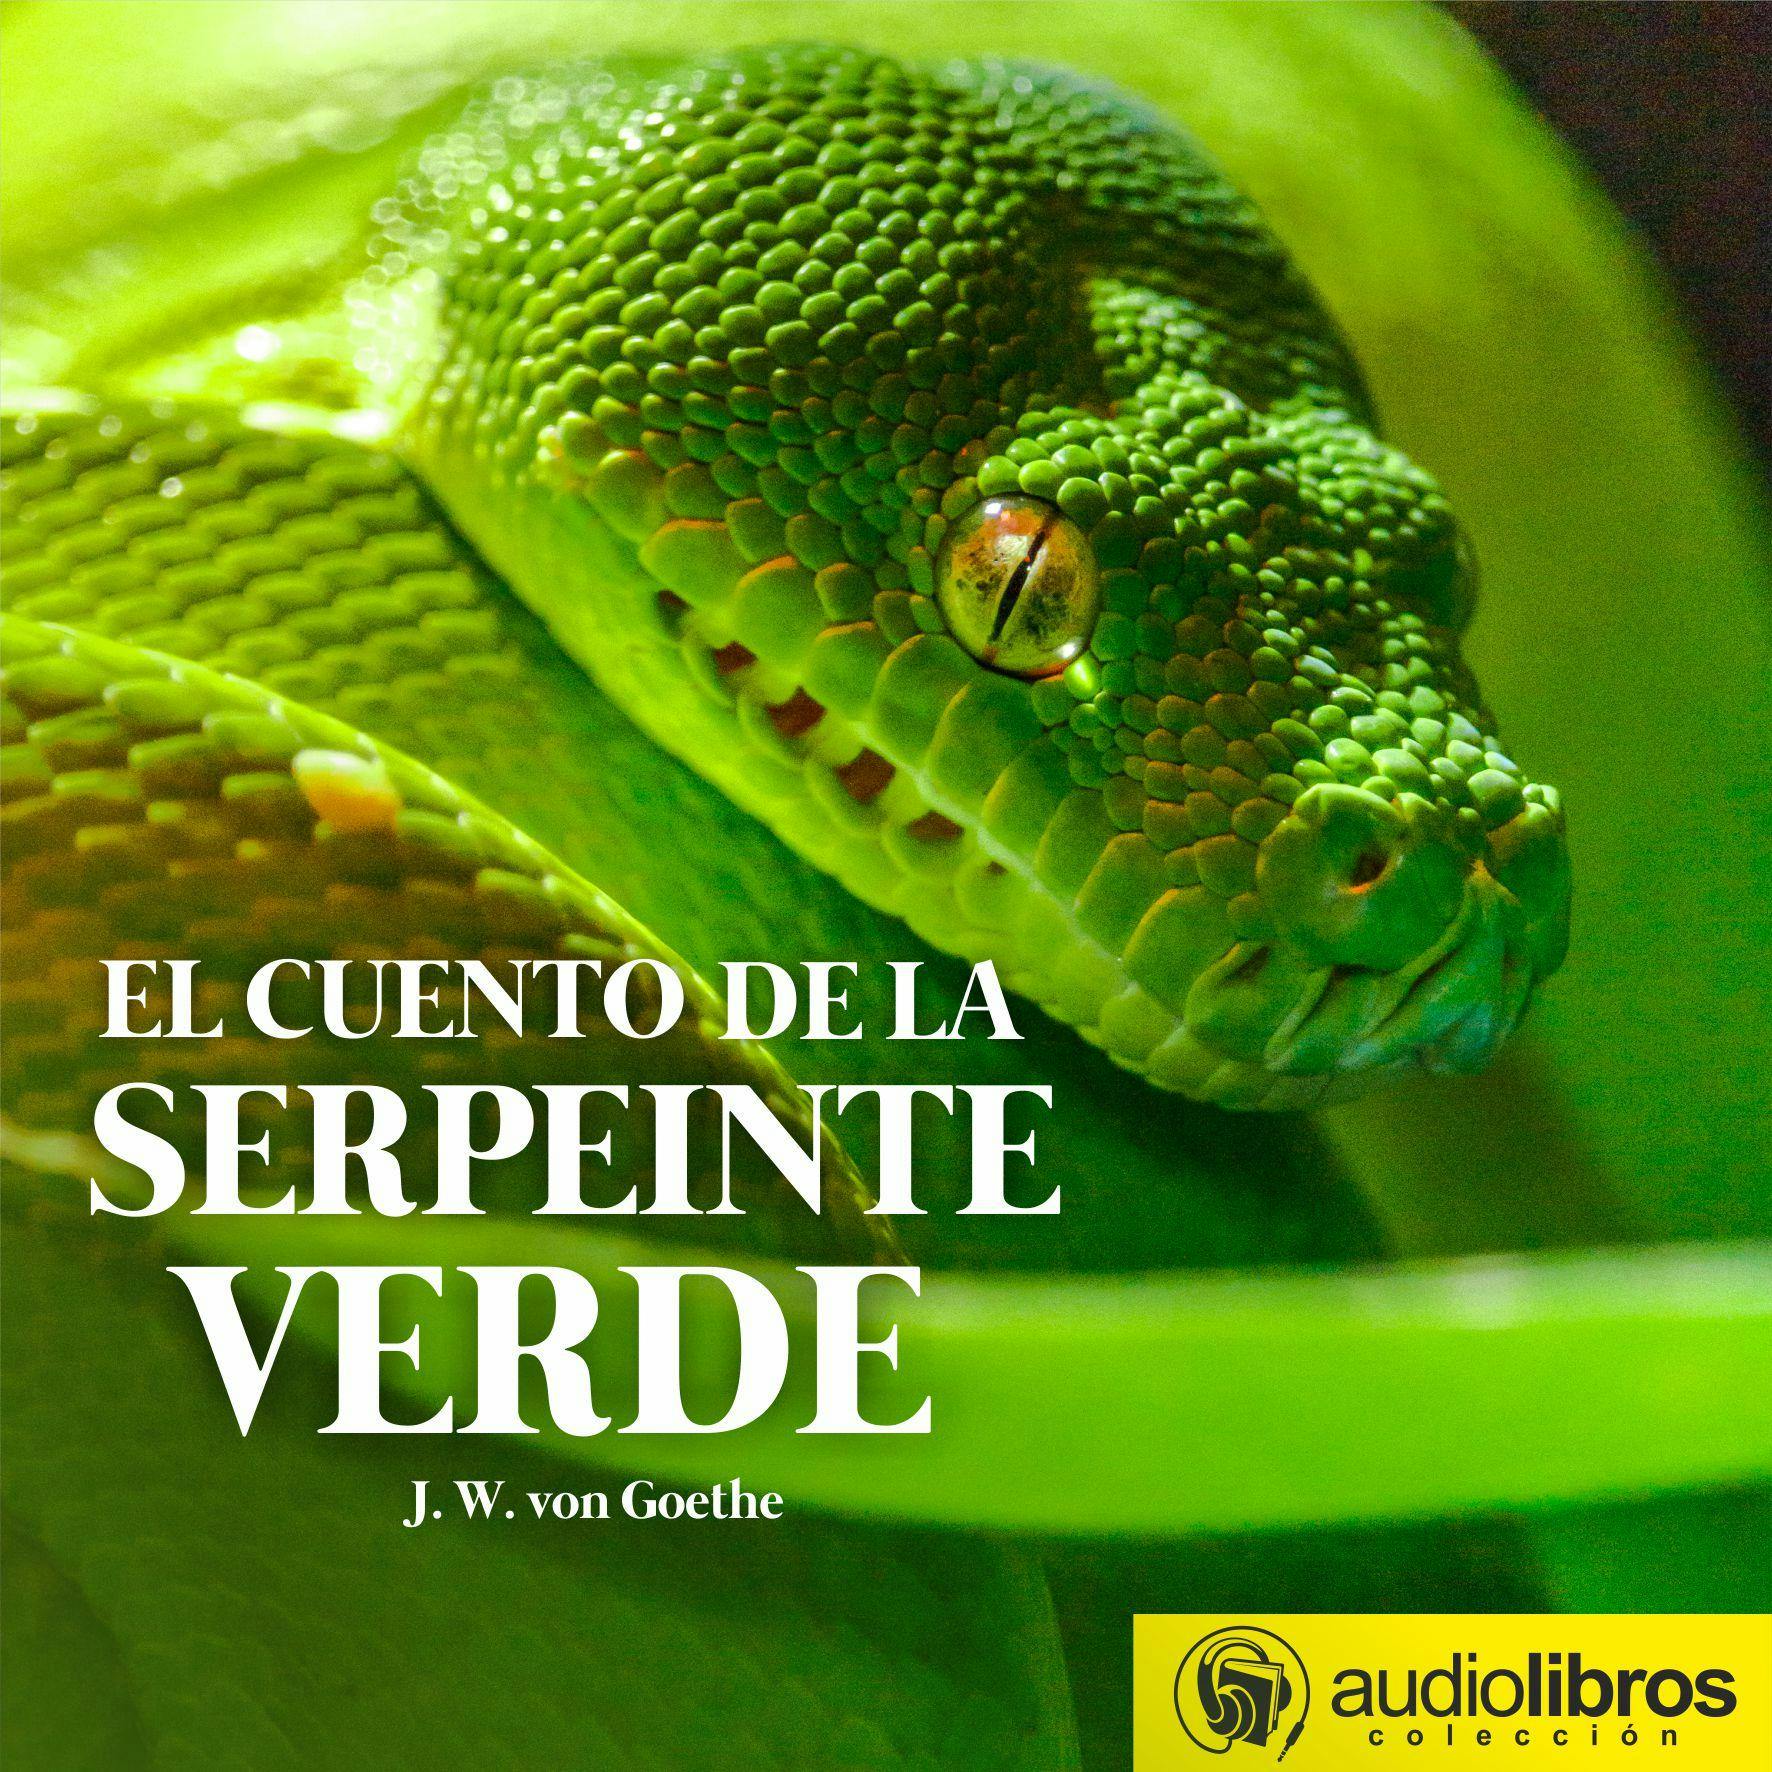 El cuento de la serpiente verde - J.W. von Goethe